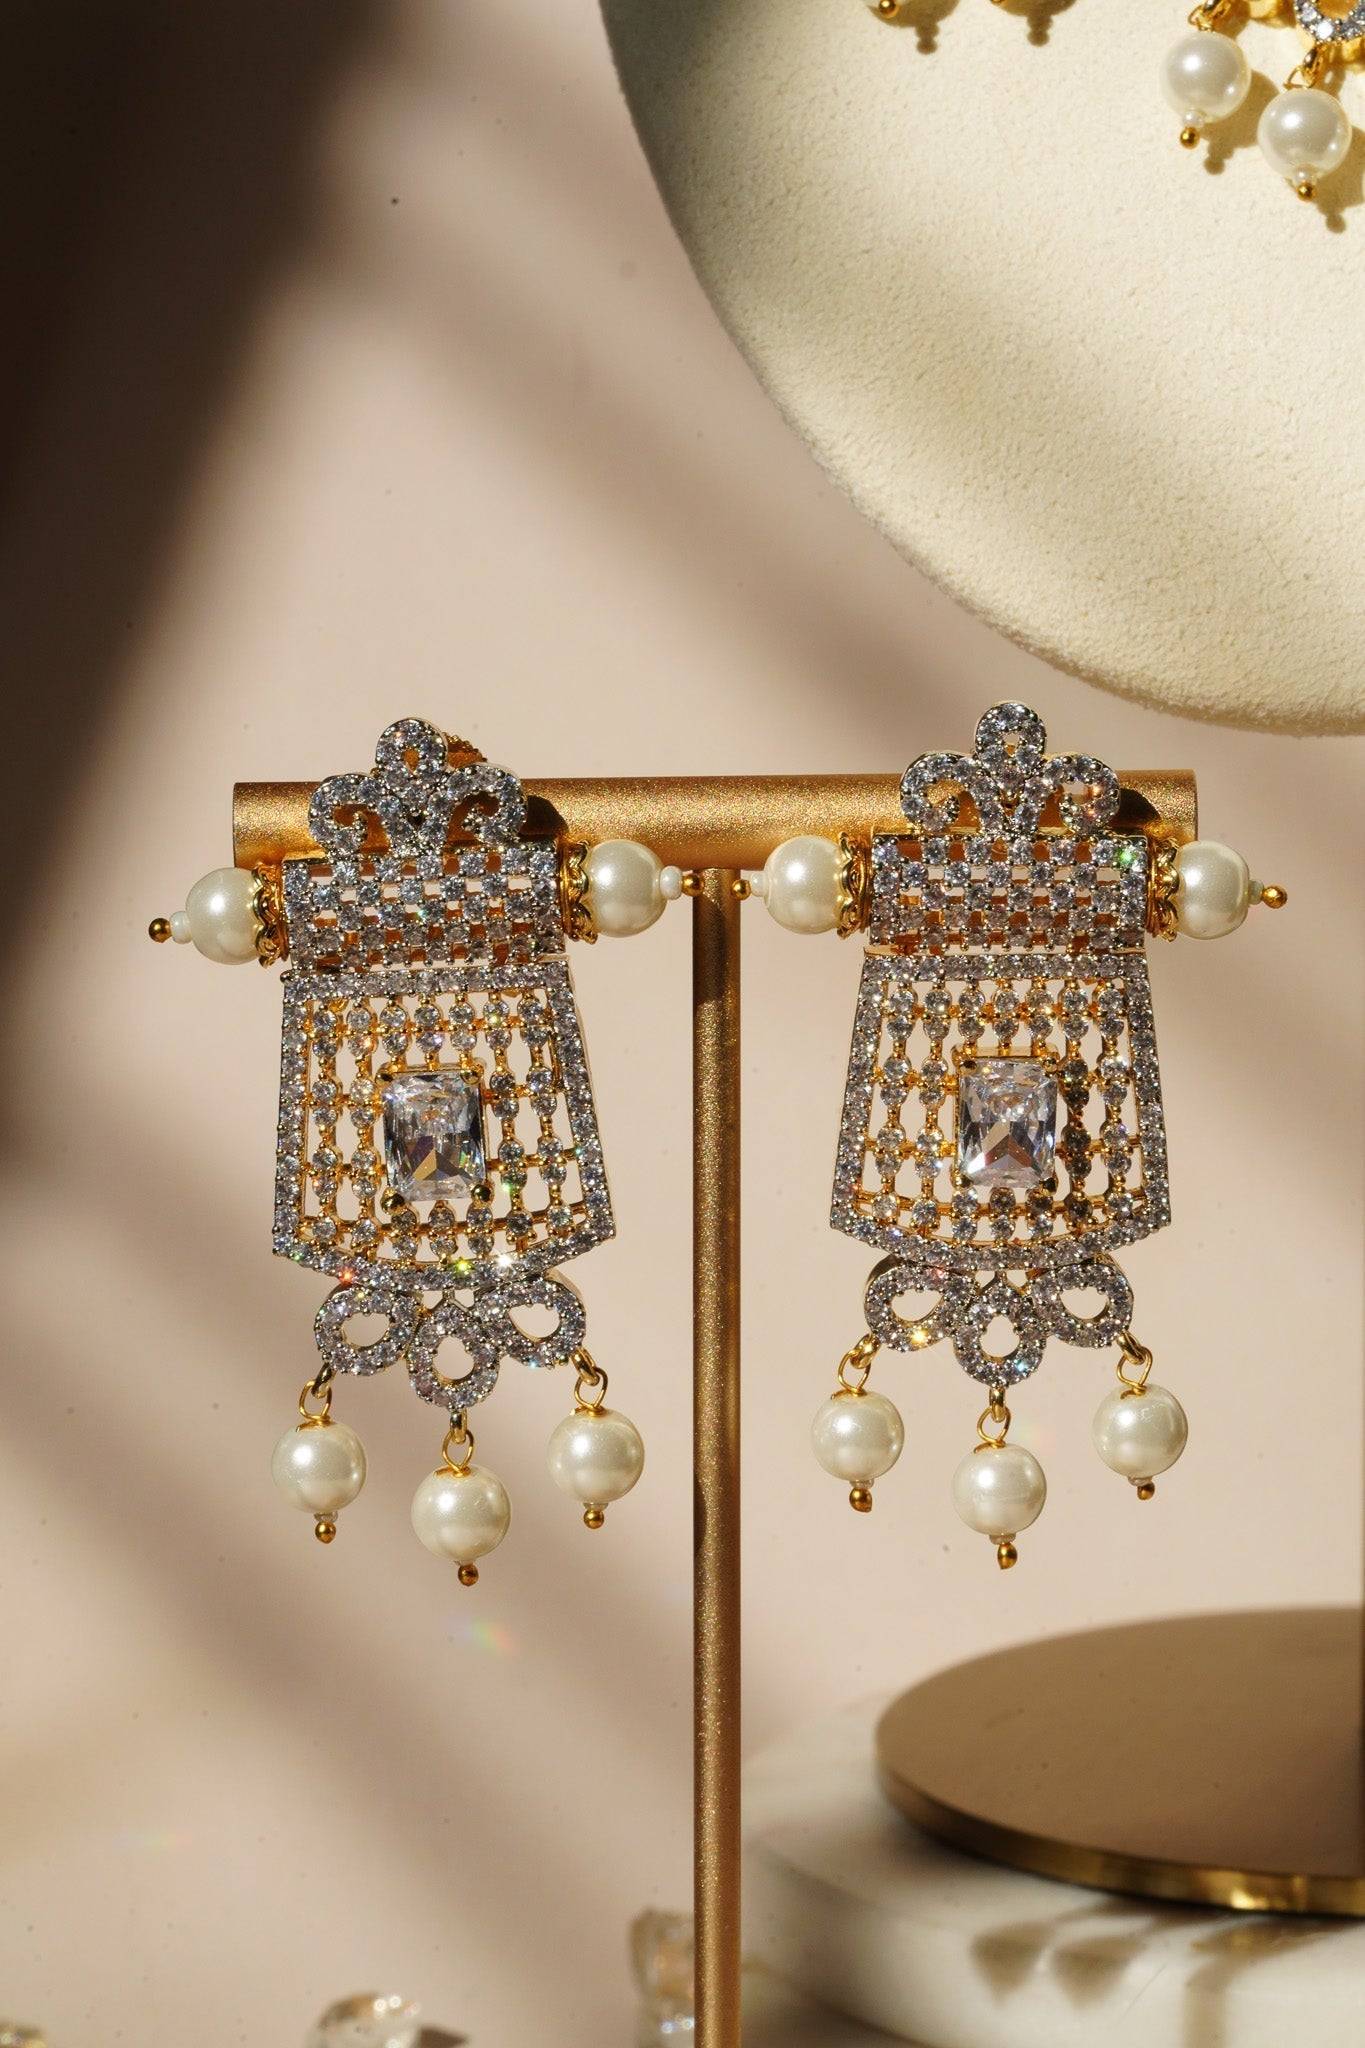 5 Piece Dazzling Crystal Rhinestone Wedding Jewelry Set